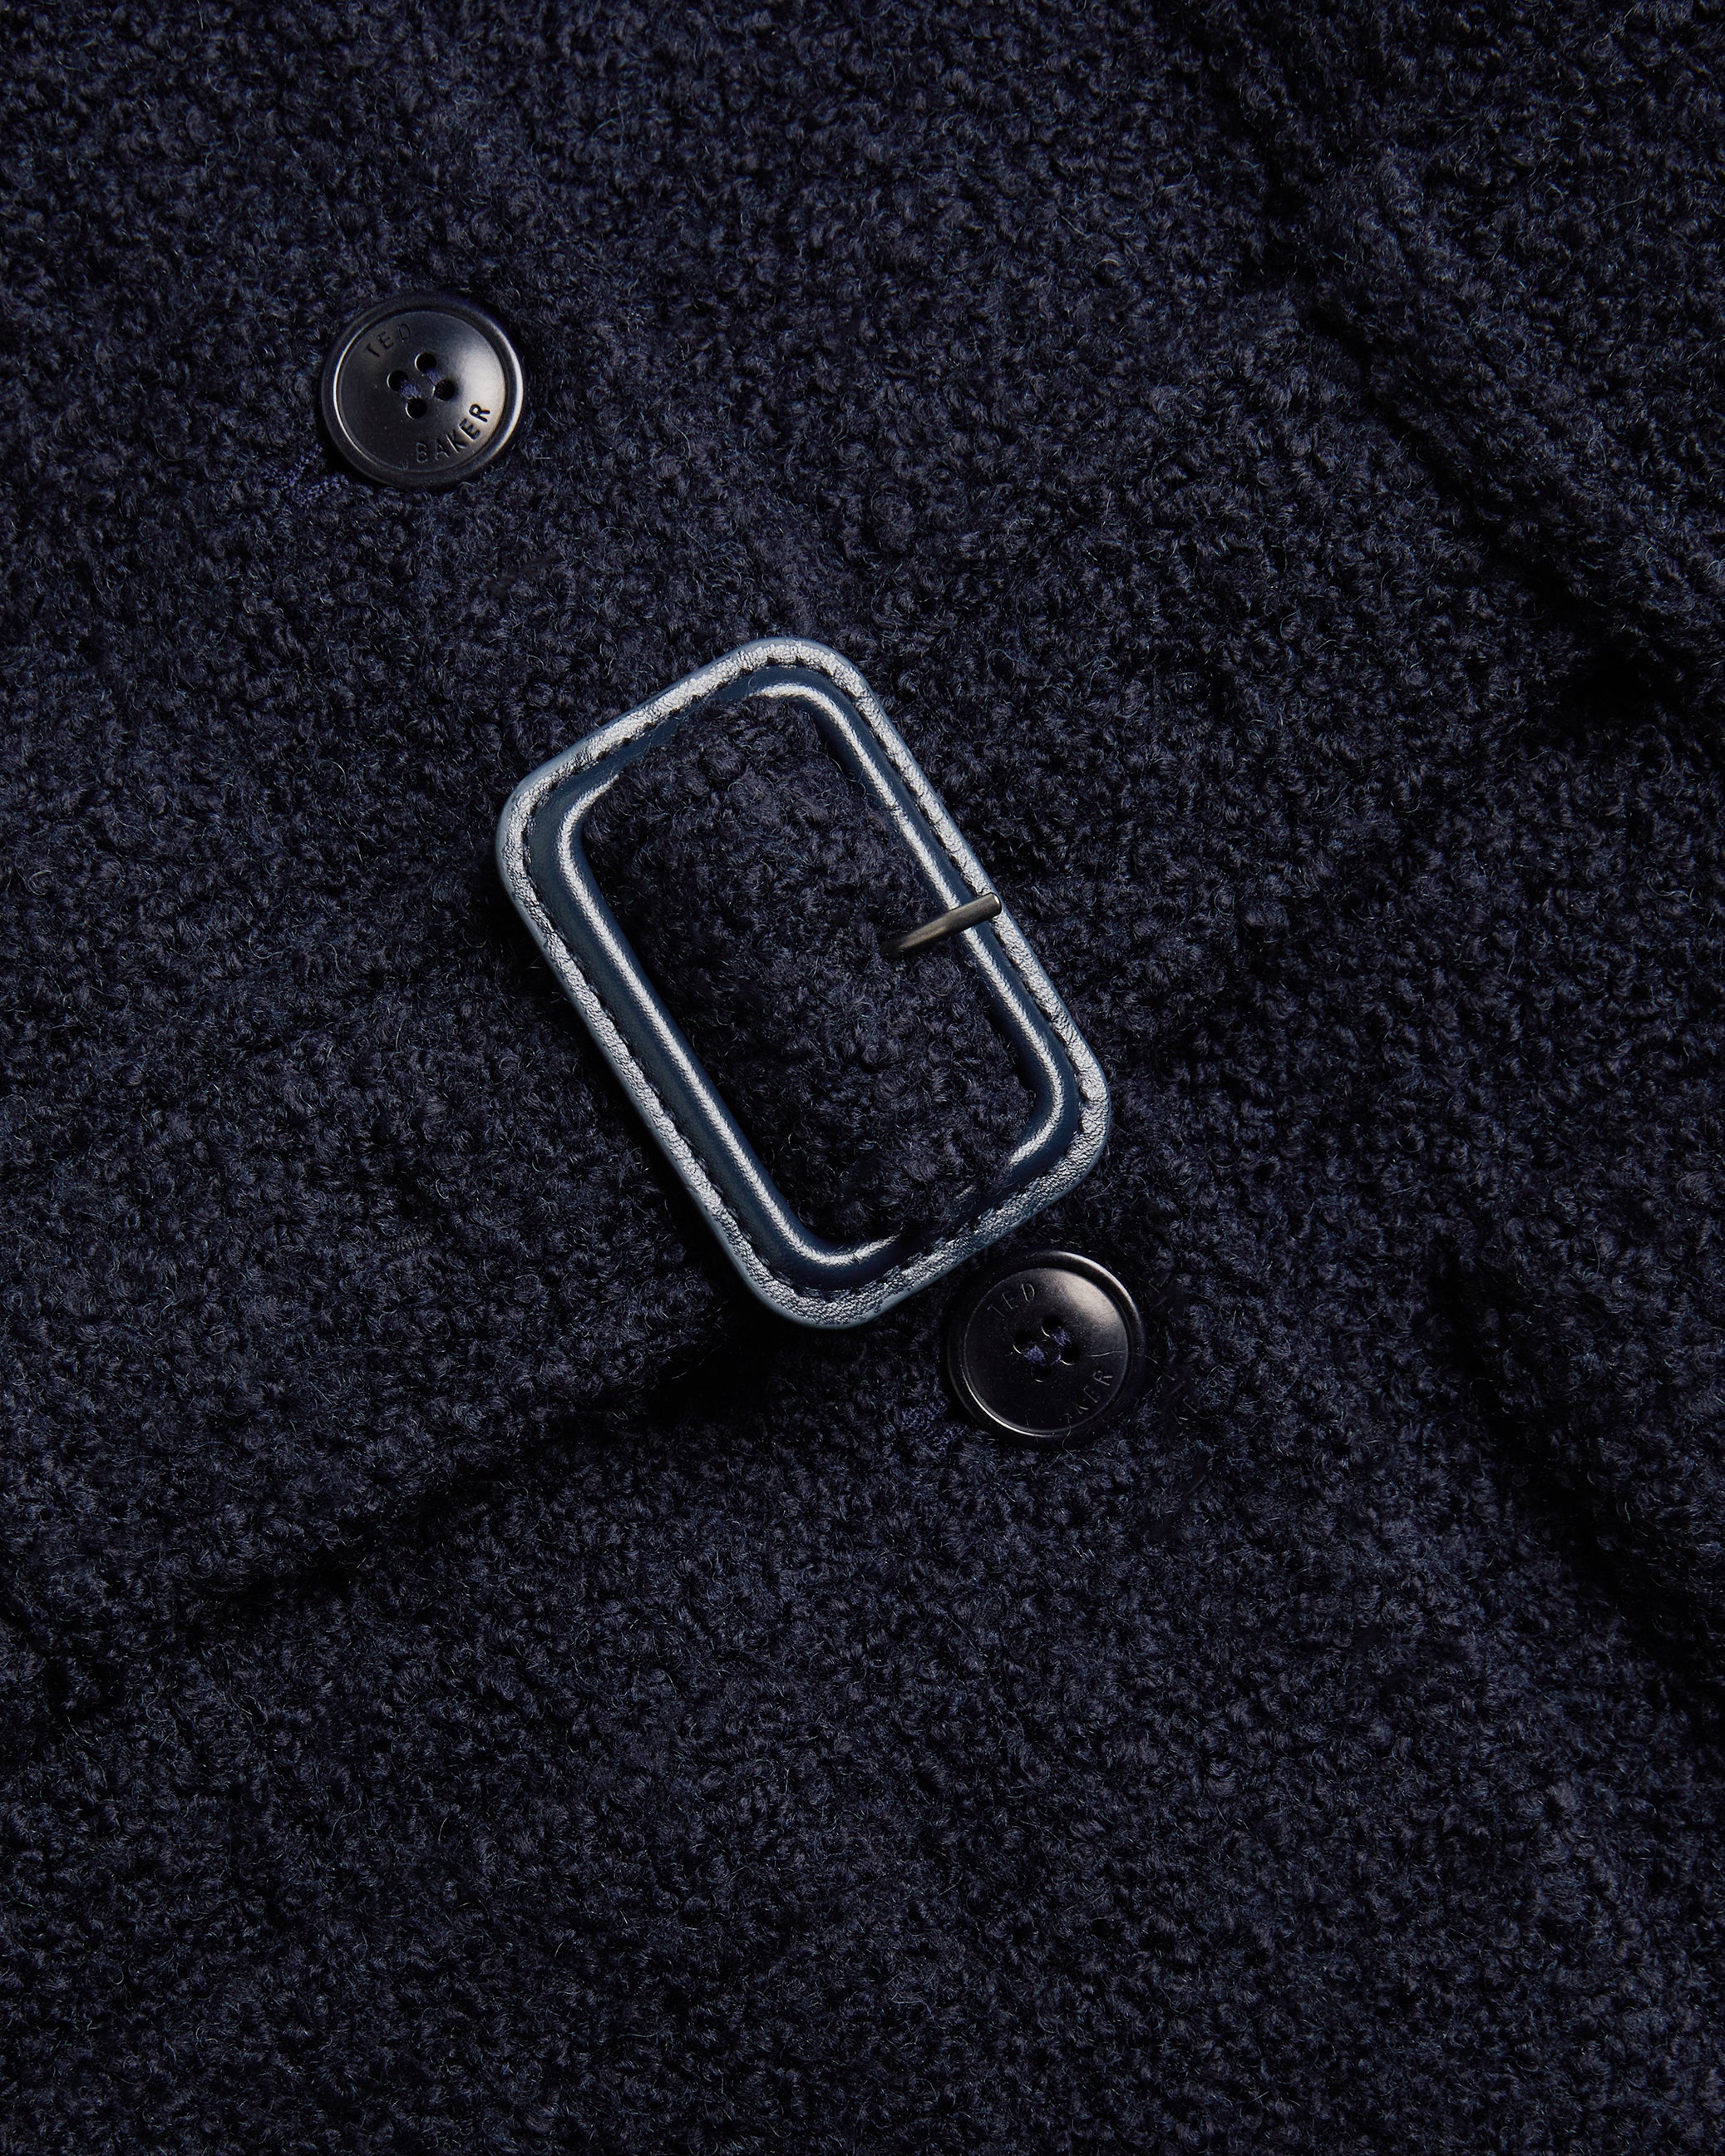 Lyddiia Longline Wool Blend Coat With Faux Fur Dk-Blue